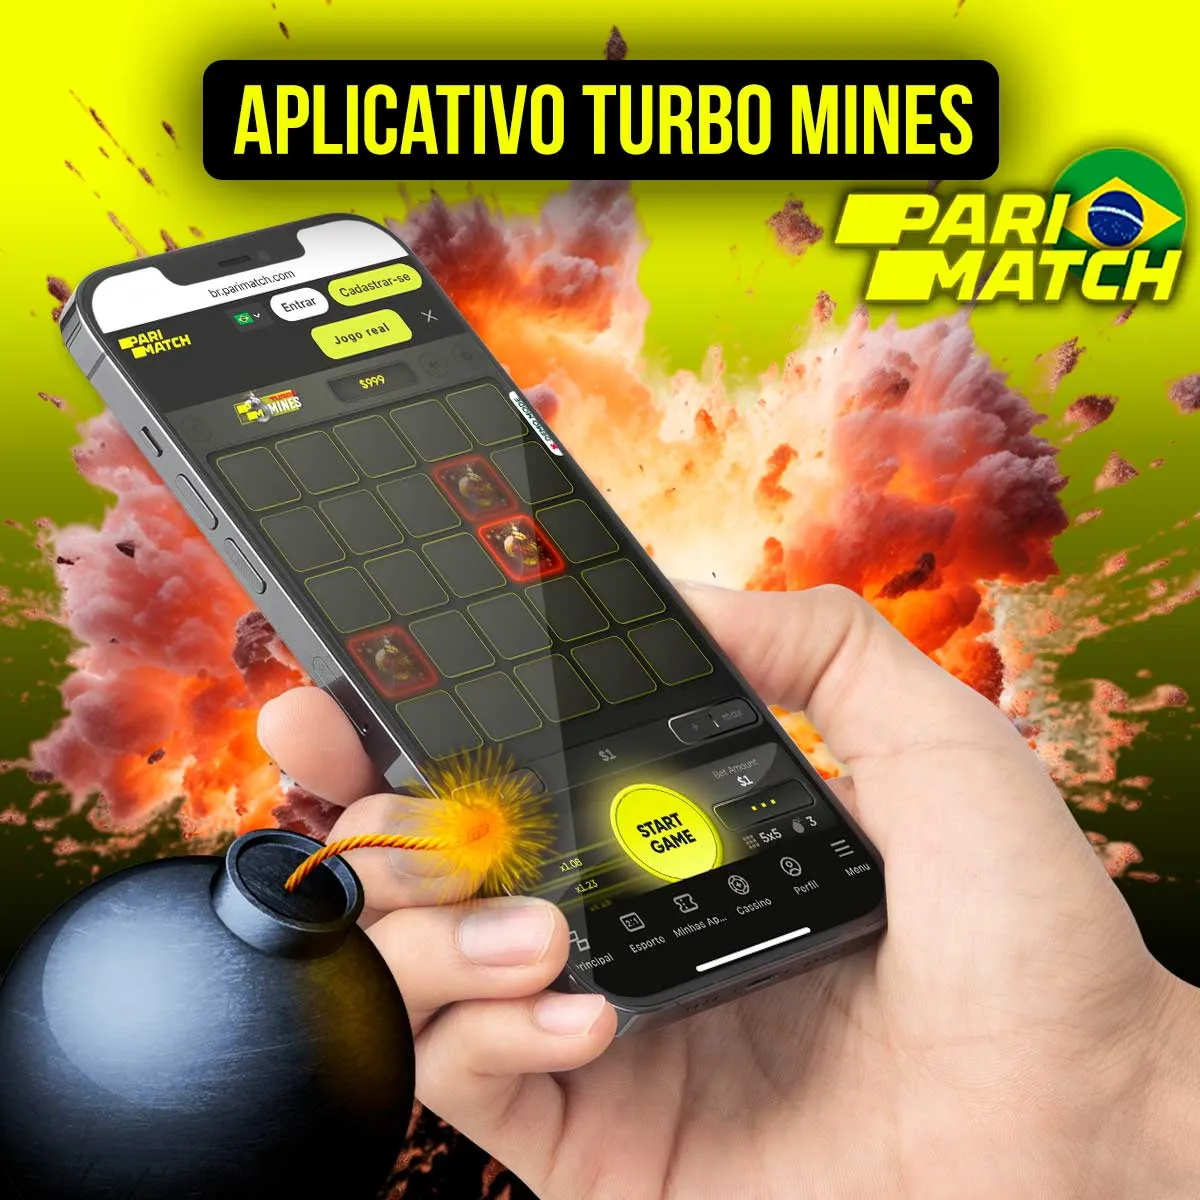 Aplicativo da Parimatch para jogar Turbo Mines